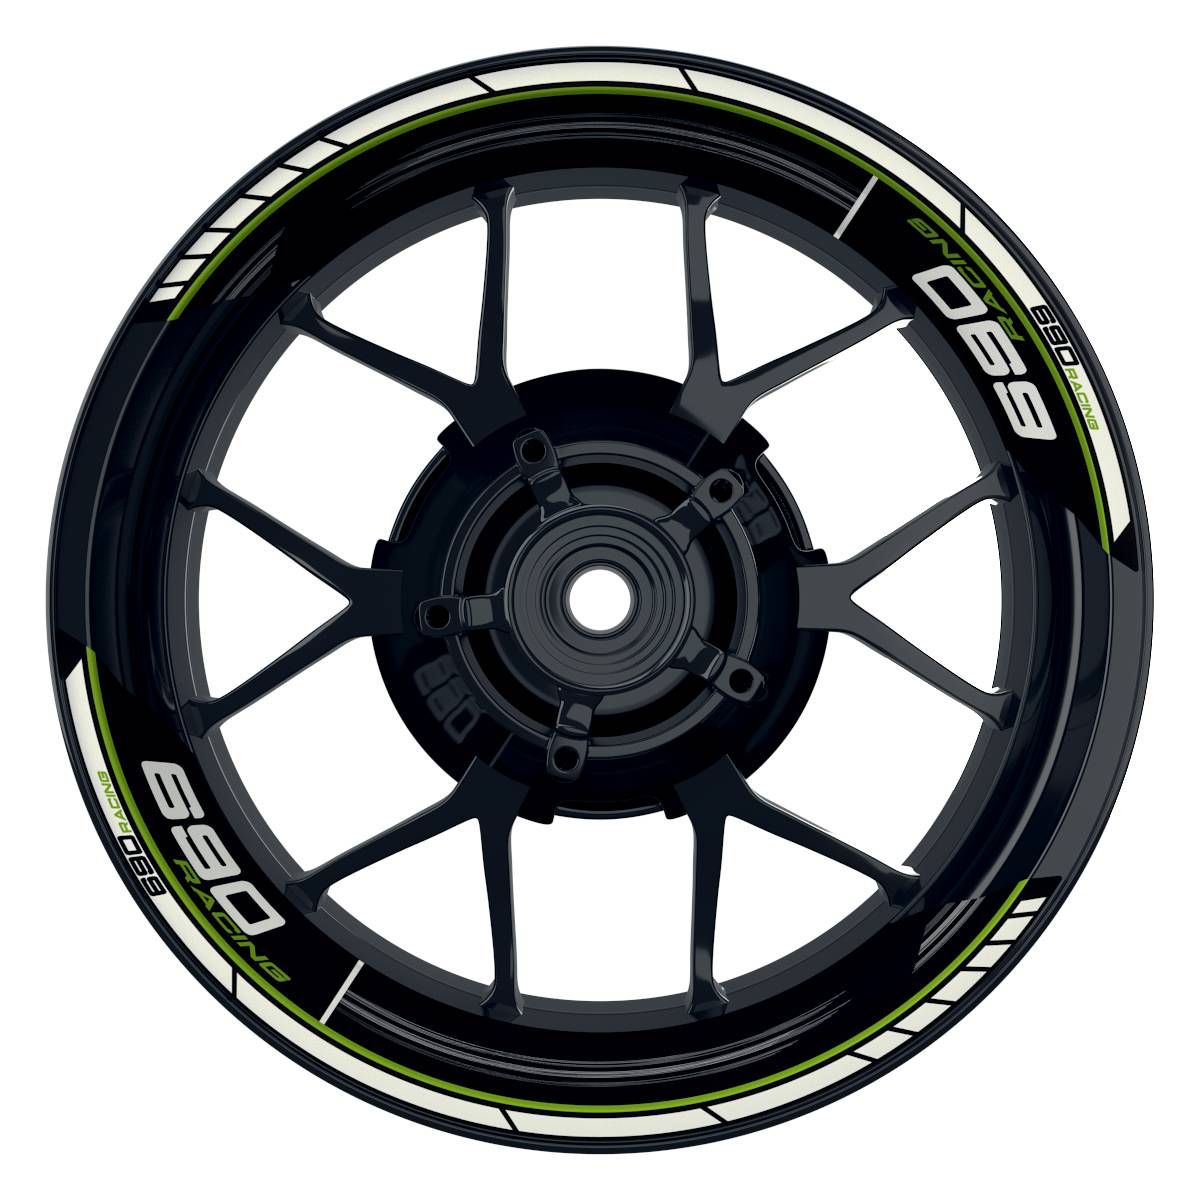 KTM Racing 690 Scratched schwarz gruen Frontansicht